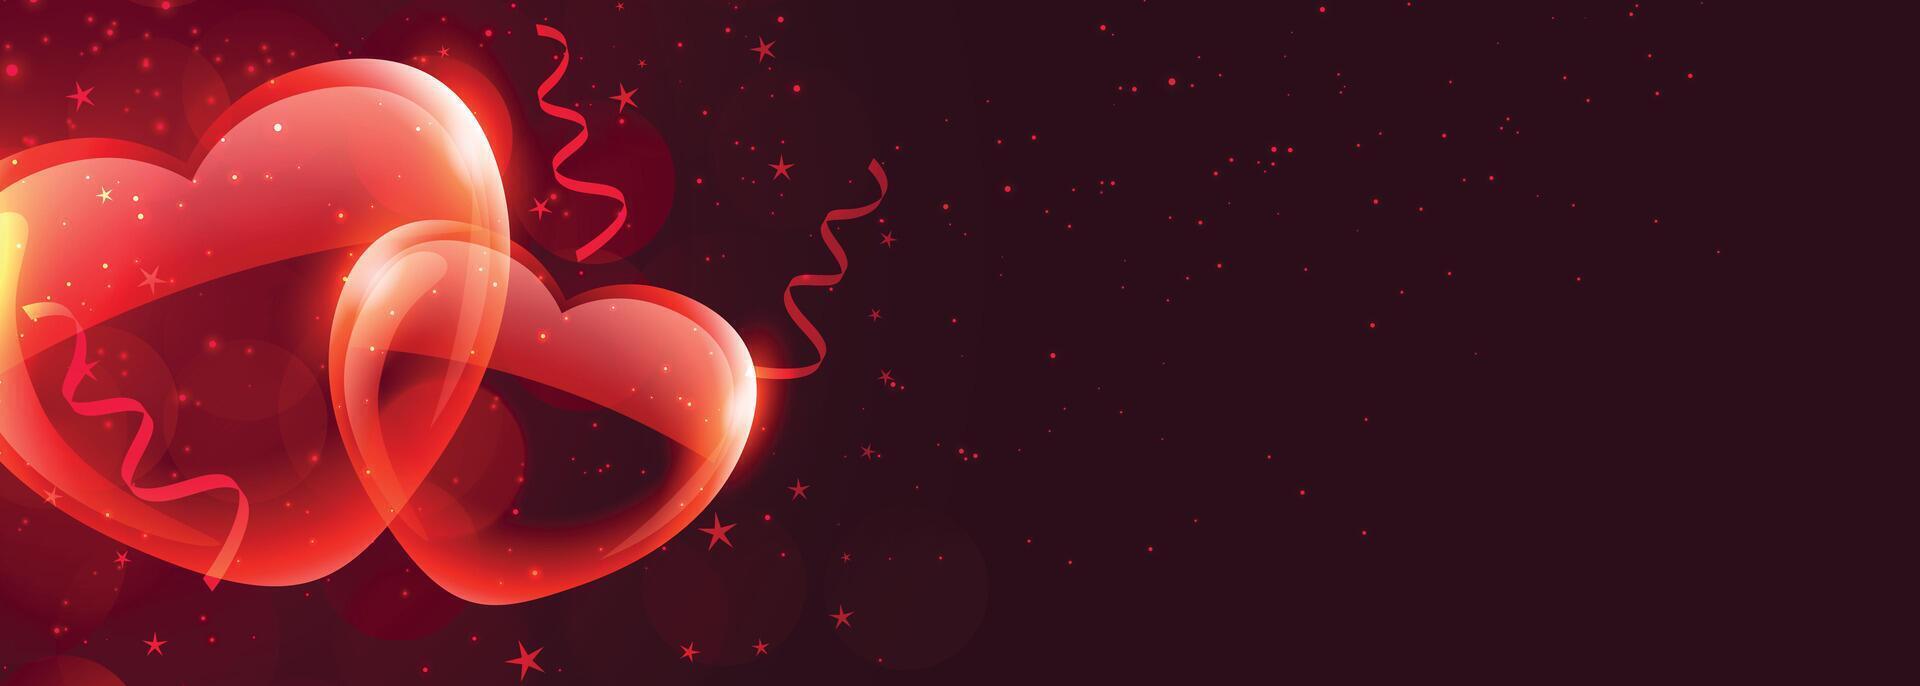 romantisch glanzend rood harten voor valentijnsdag dag vector